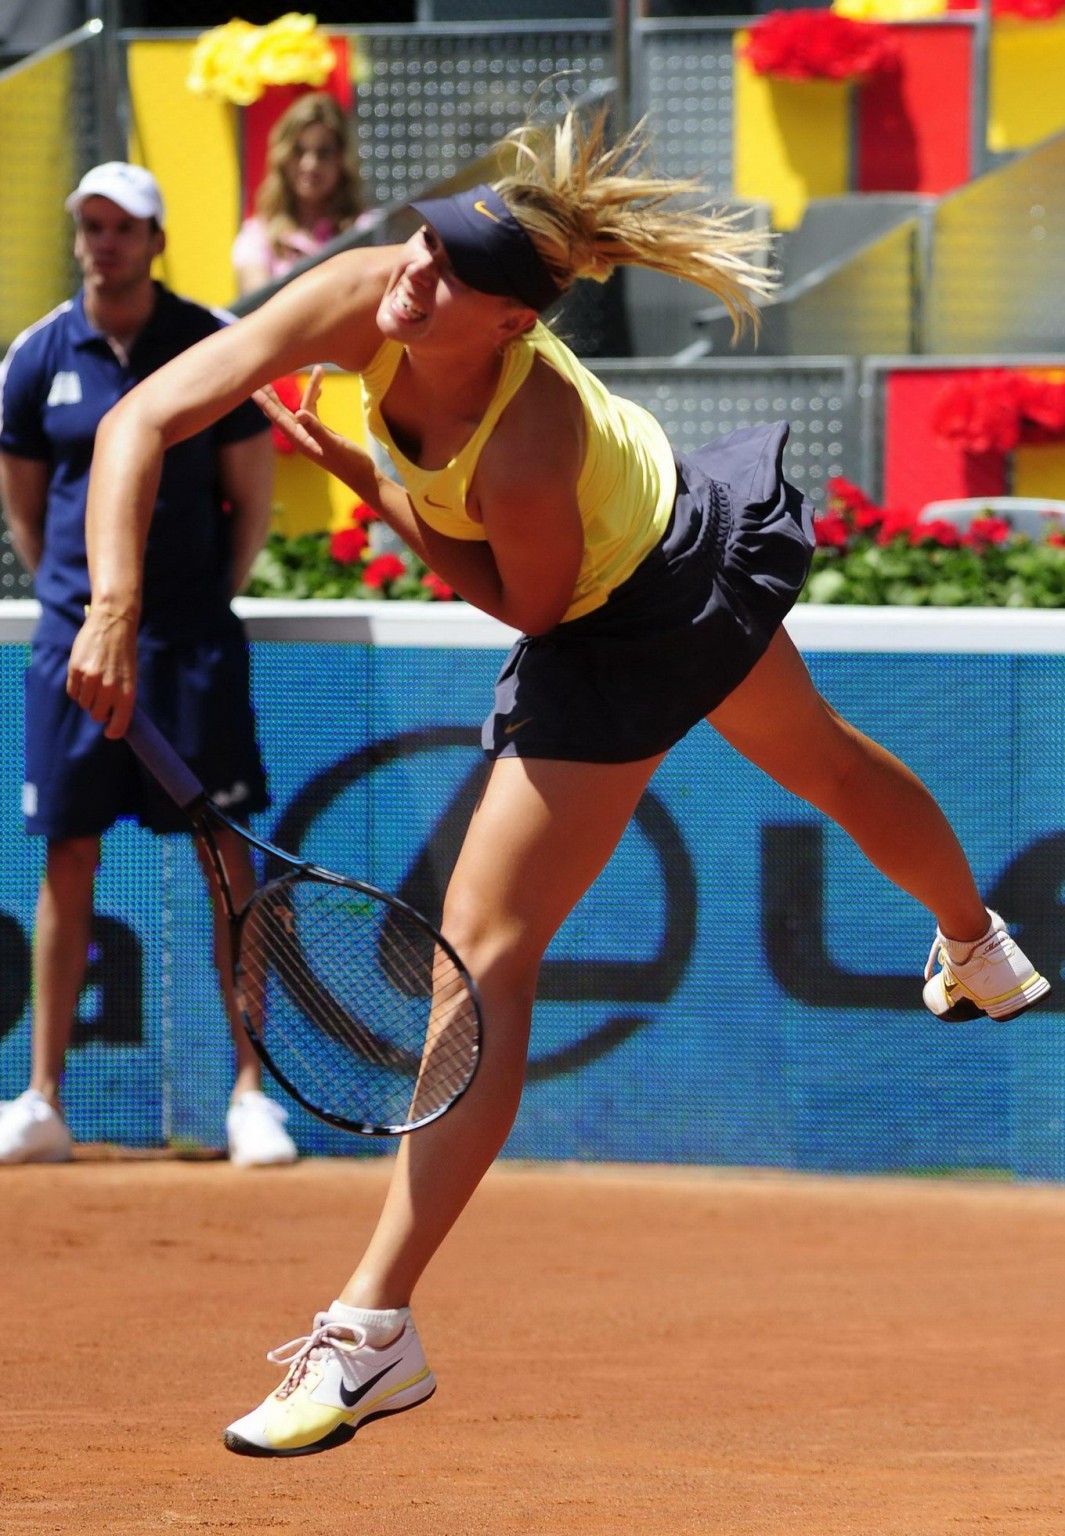 Maria sharapova upskirt beim 'madrid masters' turnier
 #75305216